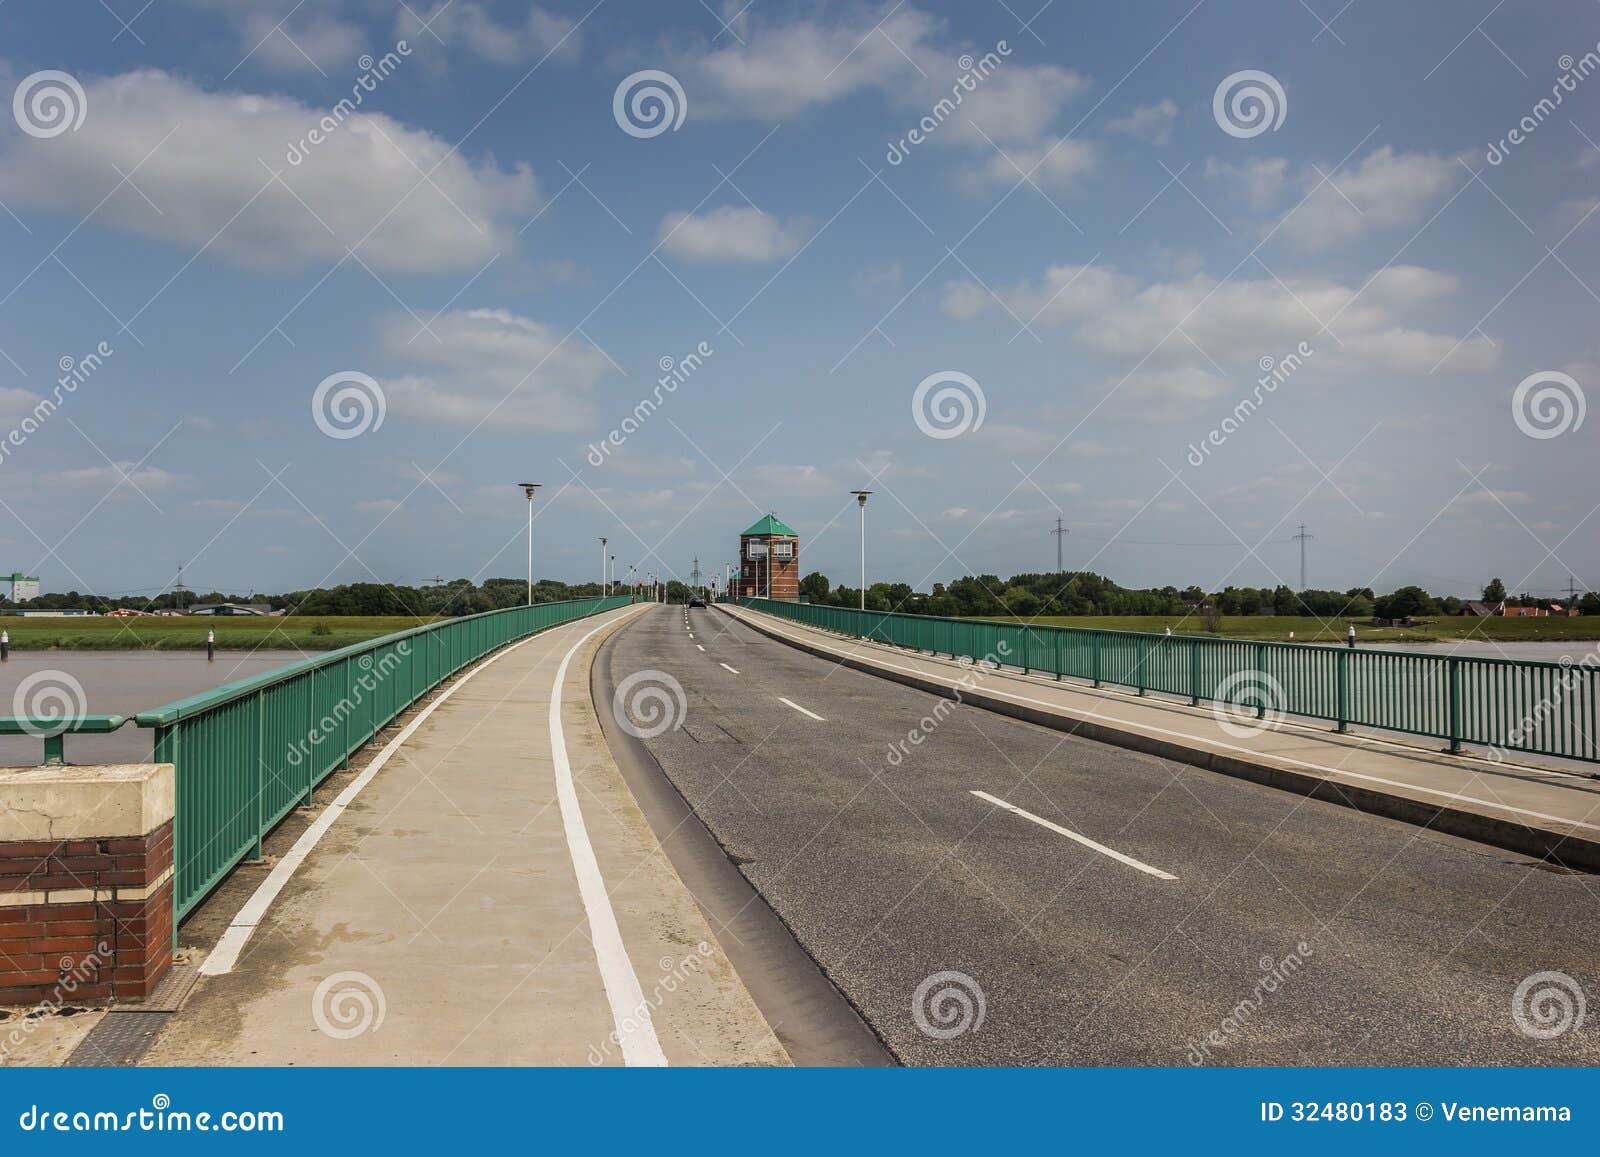 Installatie Efficiënt Vleien Bridge To the German City of Leer Stock Image - Image of germany, city:  32480183